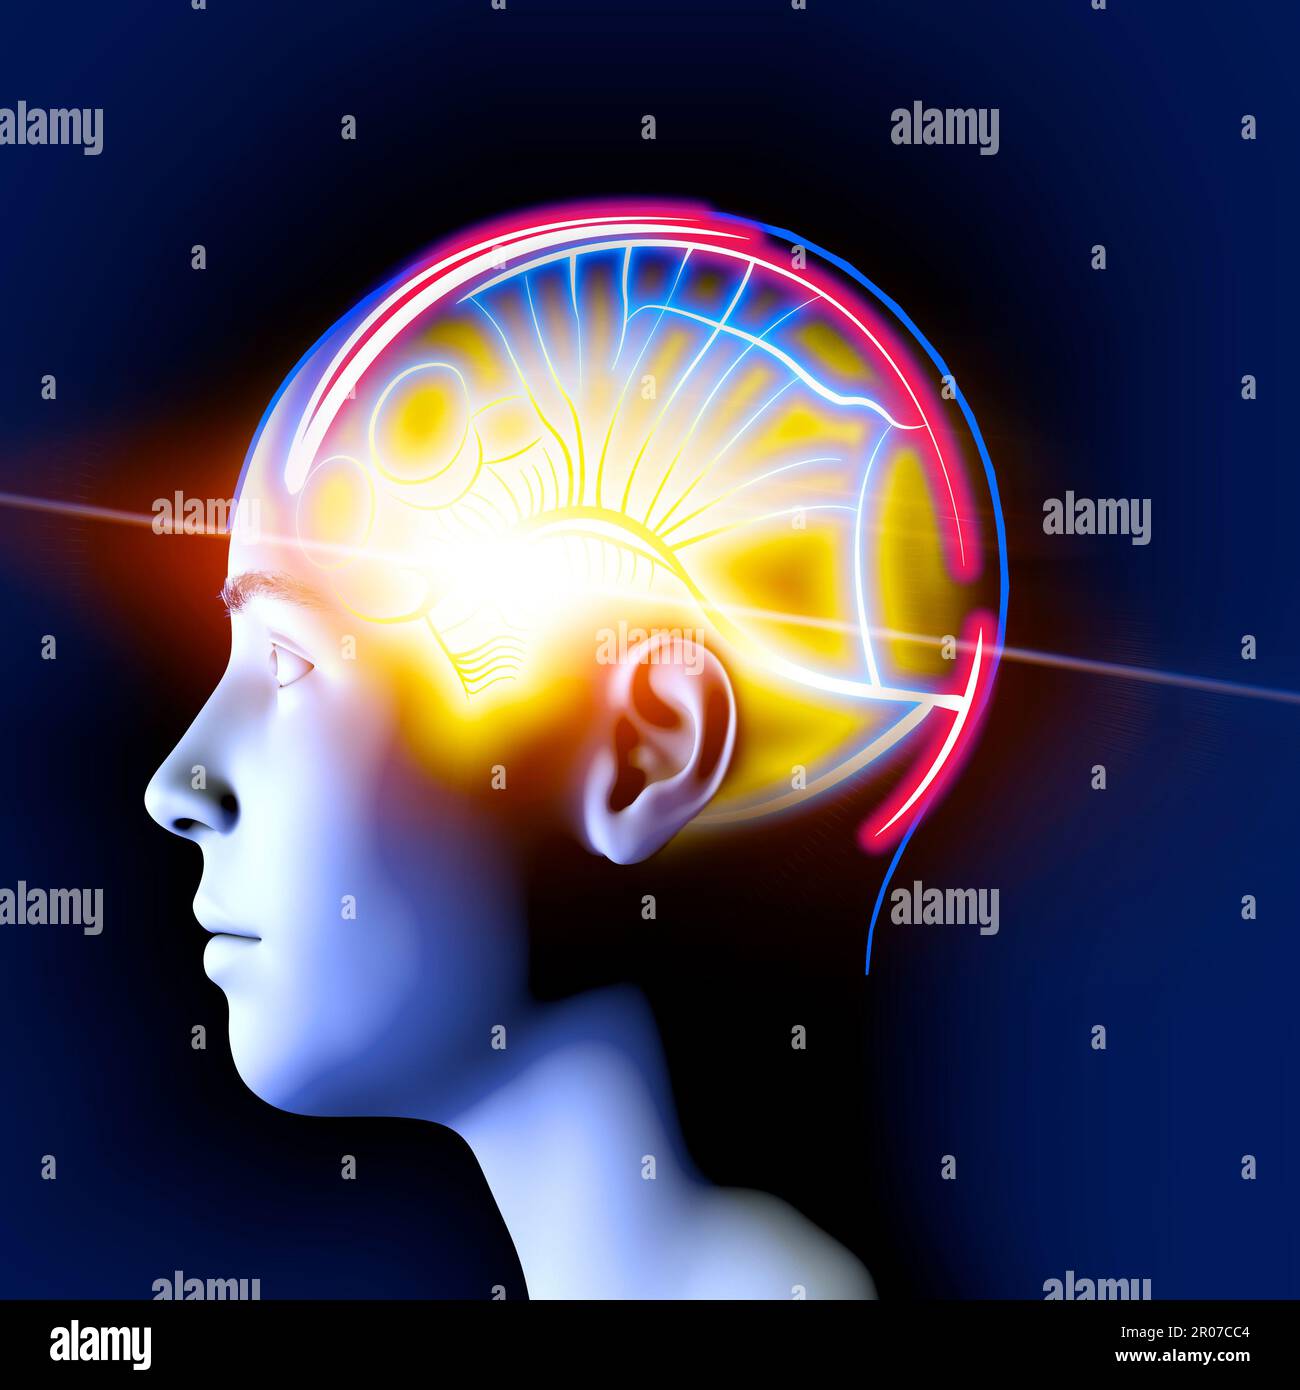 Neurologie, philosophie : connexions, développement de la pensée et de la réflexion, possibilités infinies du cerveau et de l'esprit. Anatomie humaine. Banque D'Images